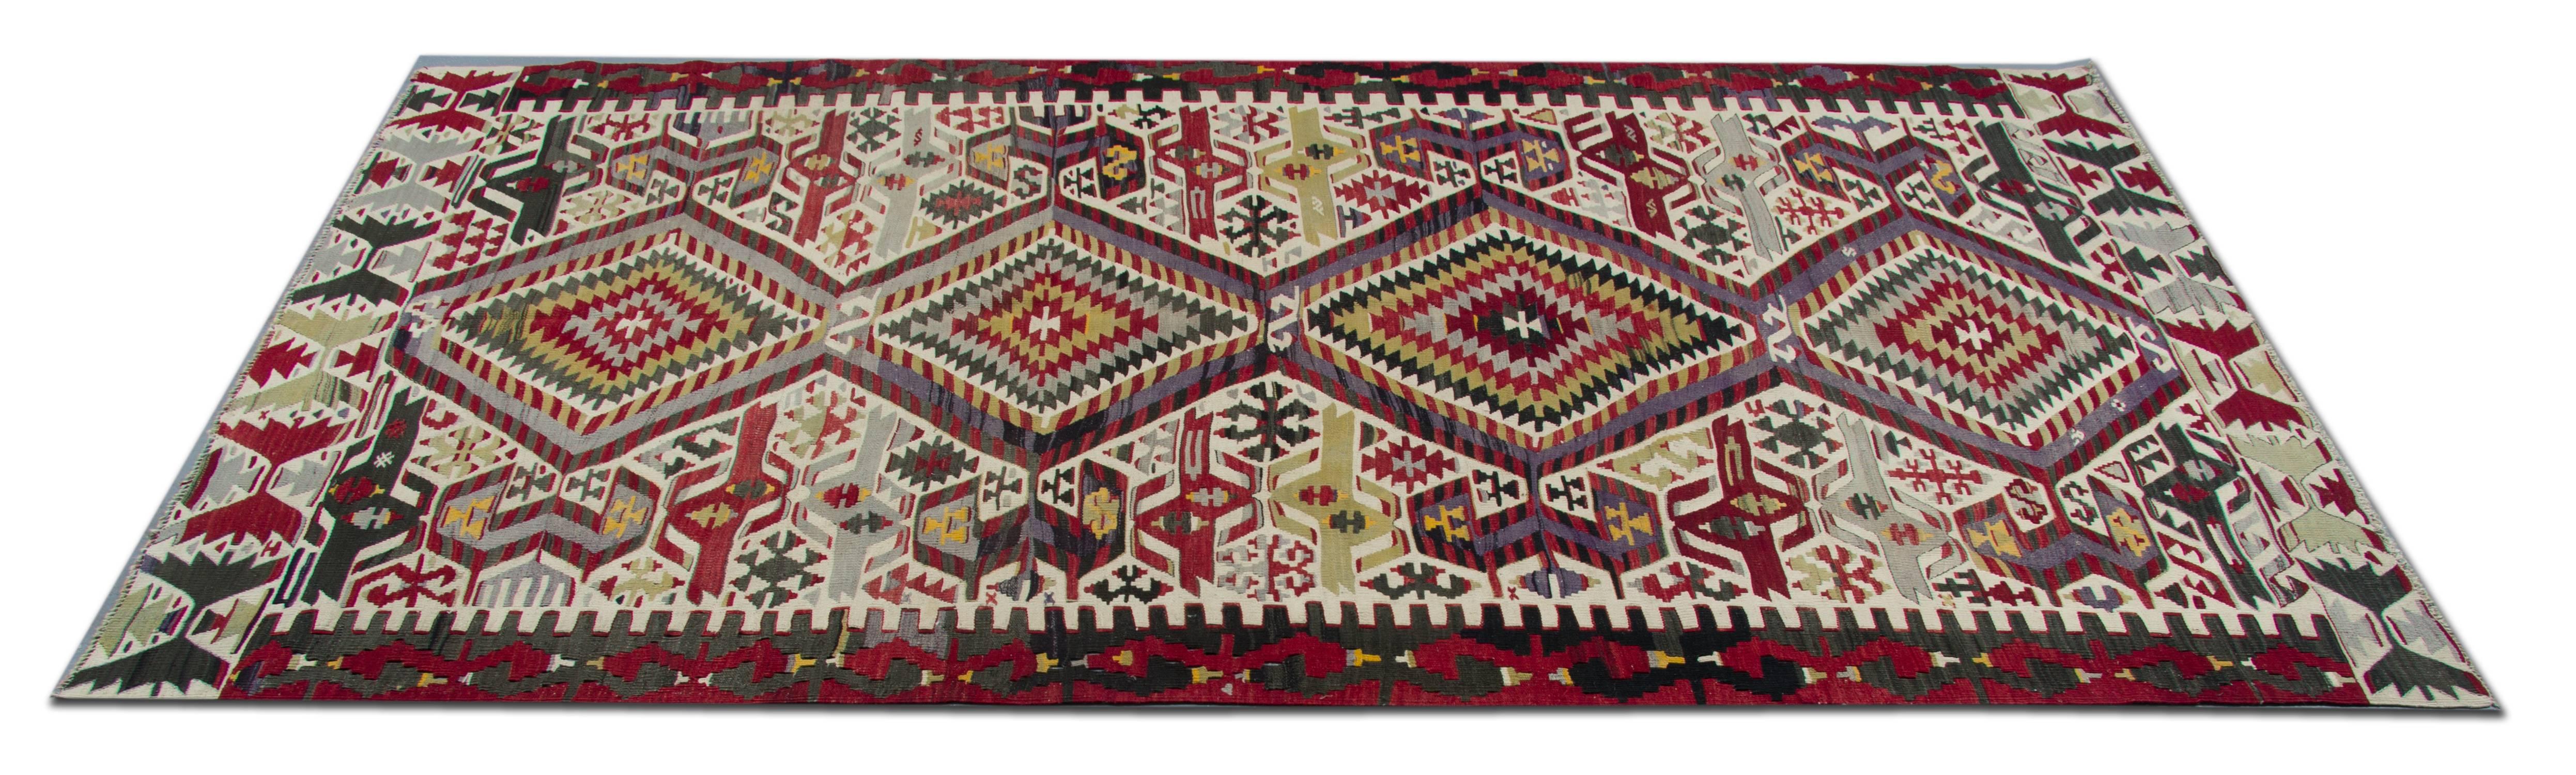 Dieser handgefertigte türkische Teppich ist ein antiker, traditioneller, handgewebter Läufer, der aus der Türkei stammt. Die Welt des Teppichdesigns. Diese Art von Teppichläufern eignet sich für Treppenläufer und Florteppiche. In einer auffälligen